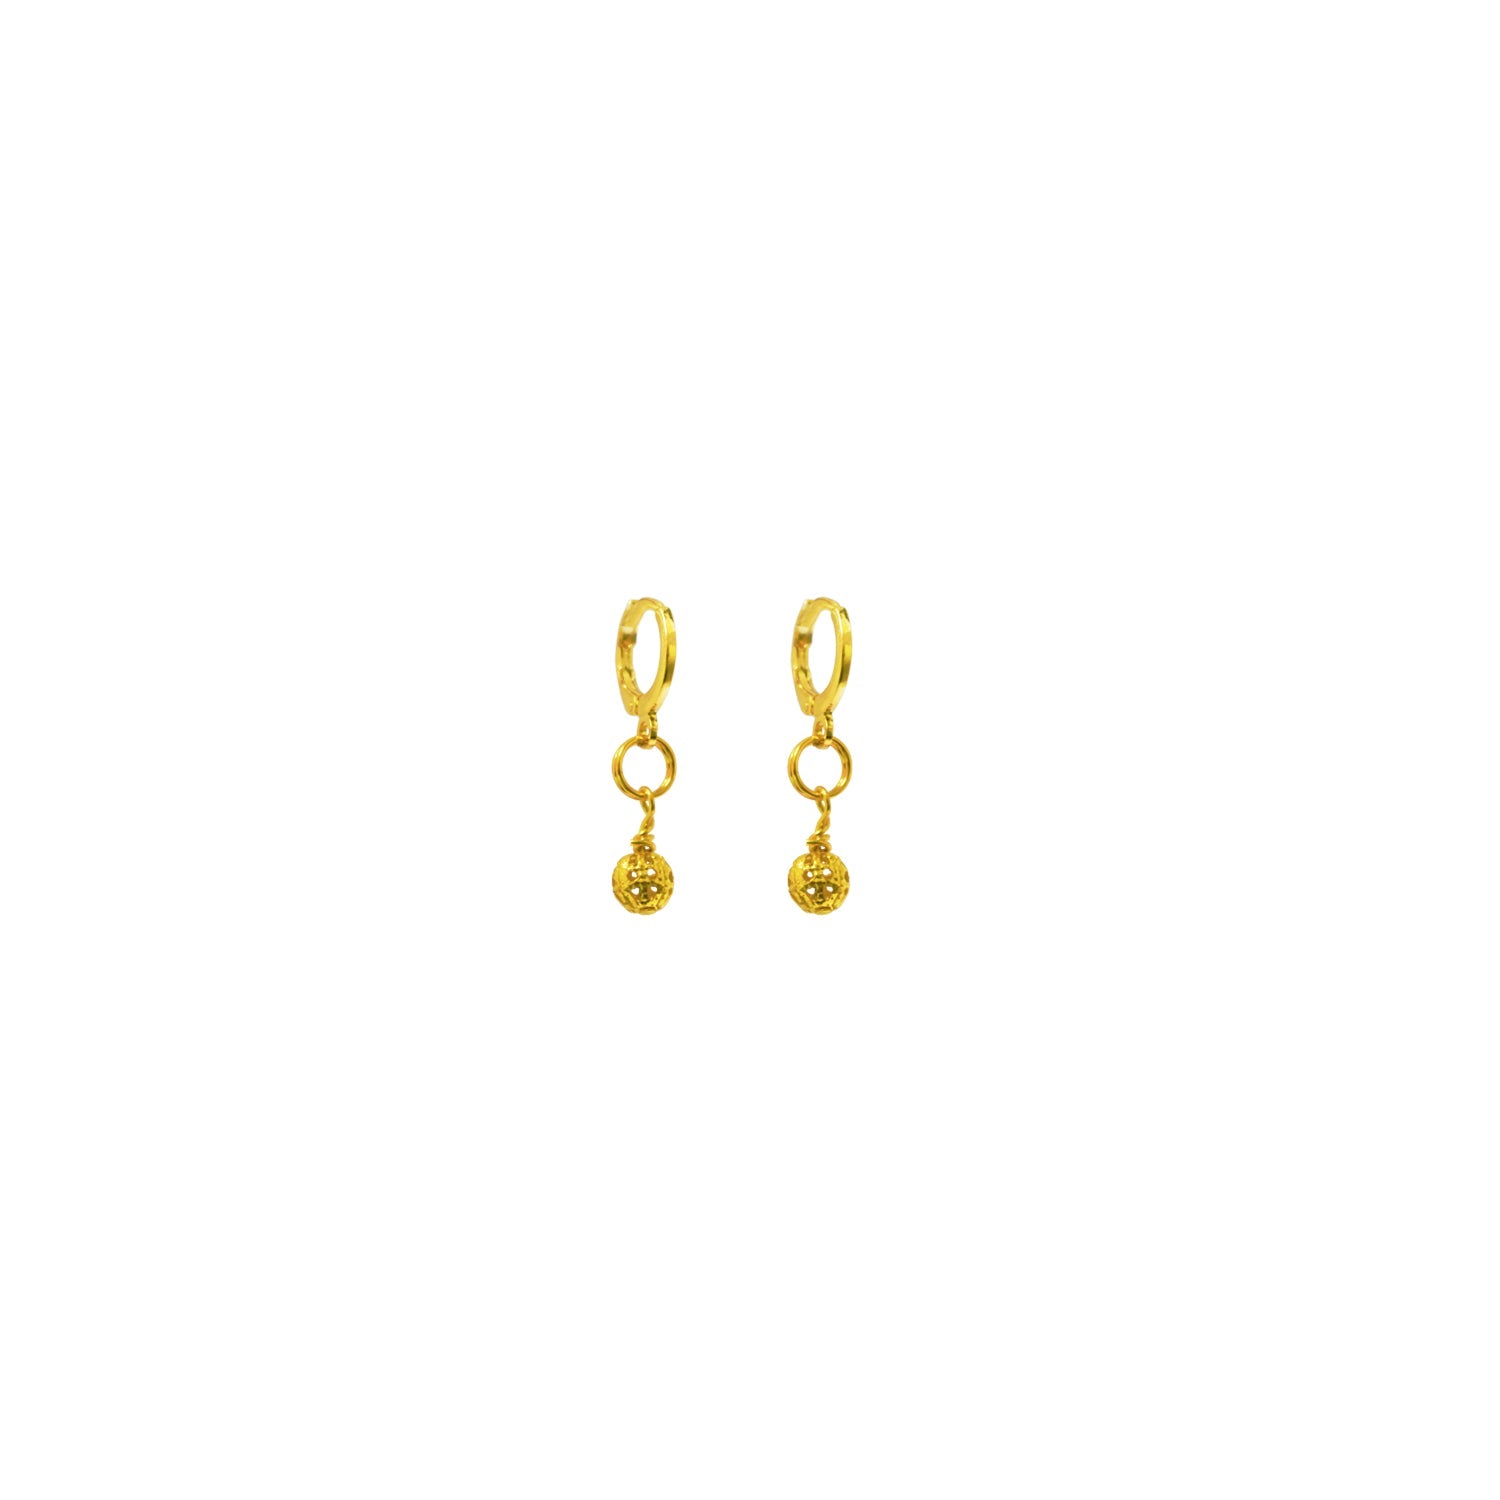 Gold Huggie Earrings, Filigree Huggie earrings, Chic Earrings, Elegant Huggie Ear Accessories | by lovedbynlanla-2